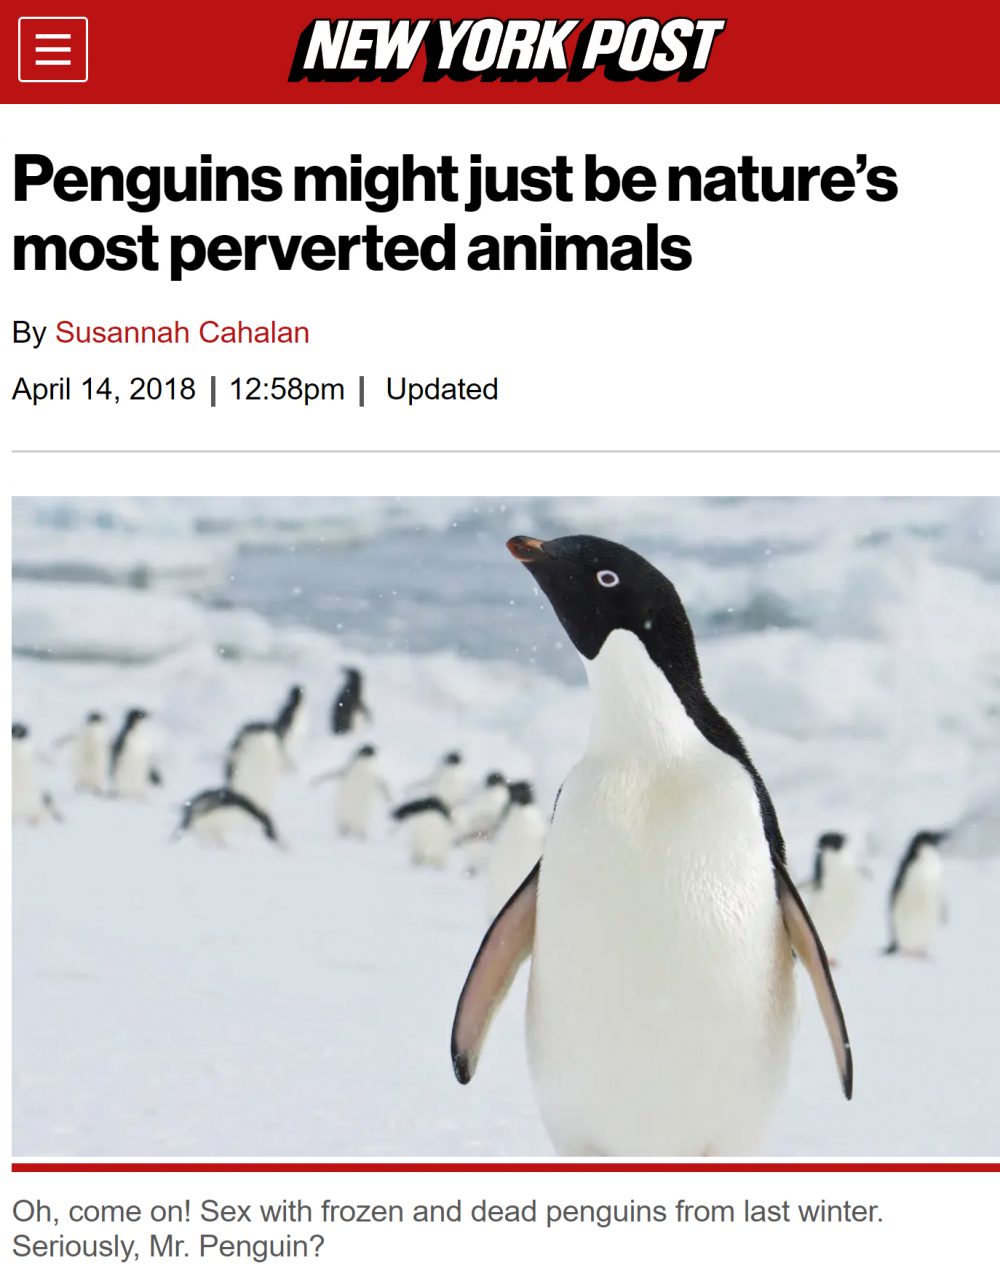 Los pingüinos podrían ser los animales más pervertidos